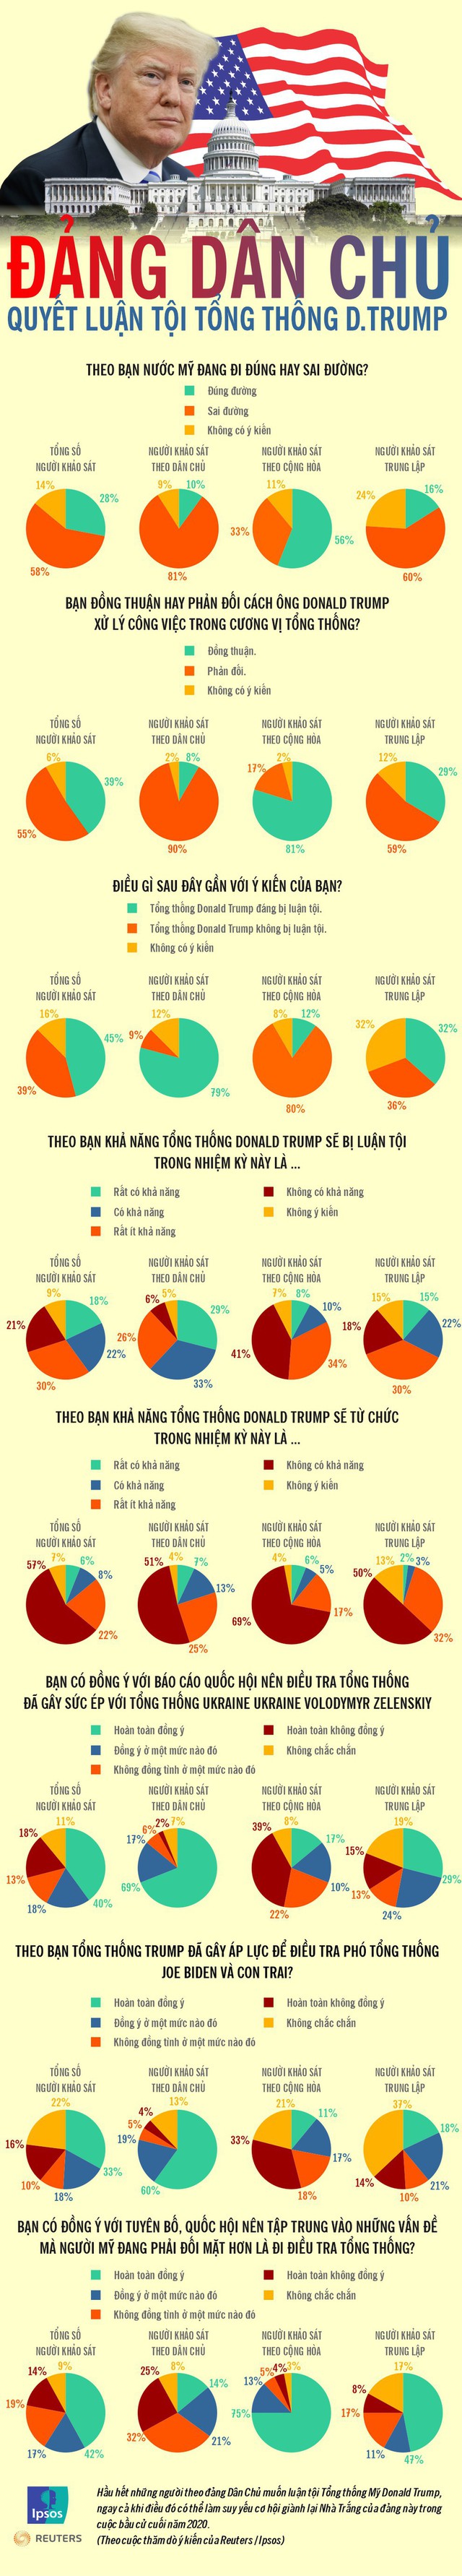 Infographic: Quan điểm của người Mỹ về việc luận tội Tổng thống Trump - Ảnh 1.